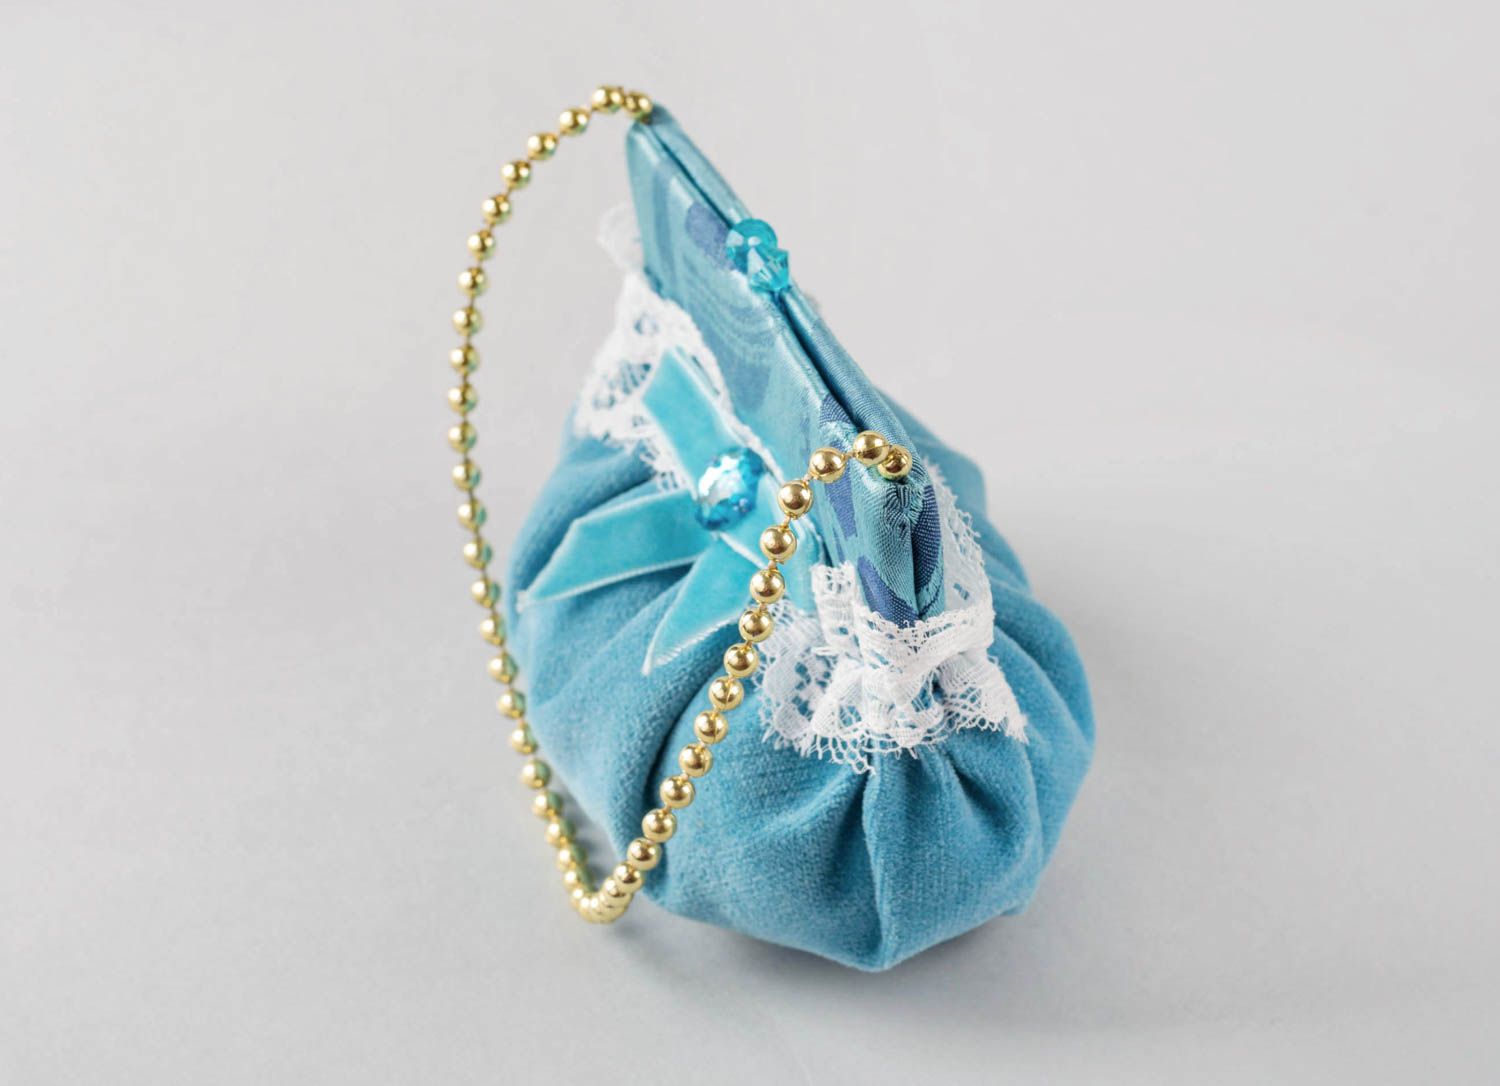 Интерьерная подвеска из ткани ручной работы оригинальная голубая симпатичная фото 4